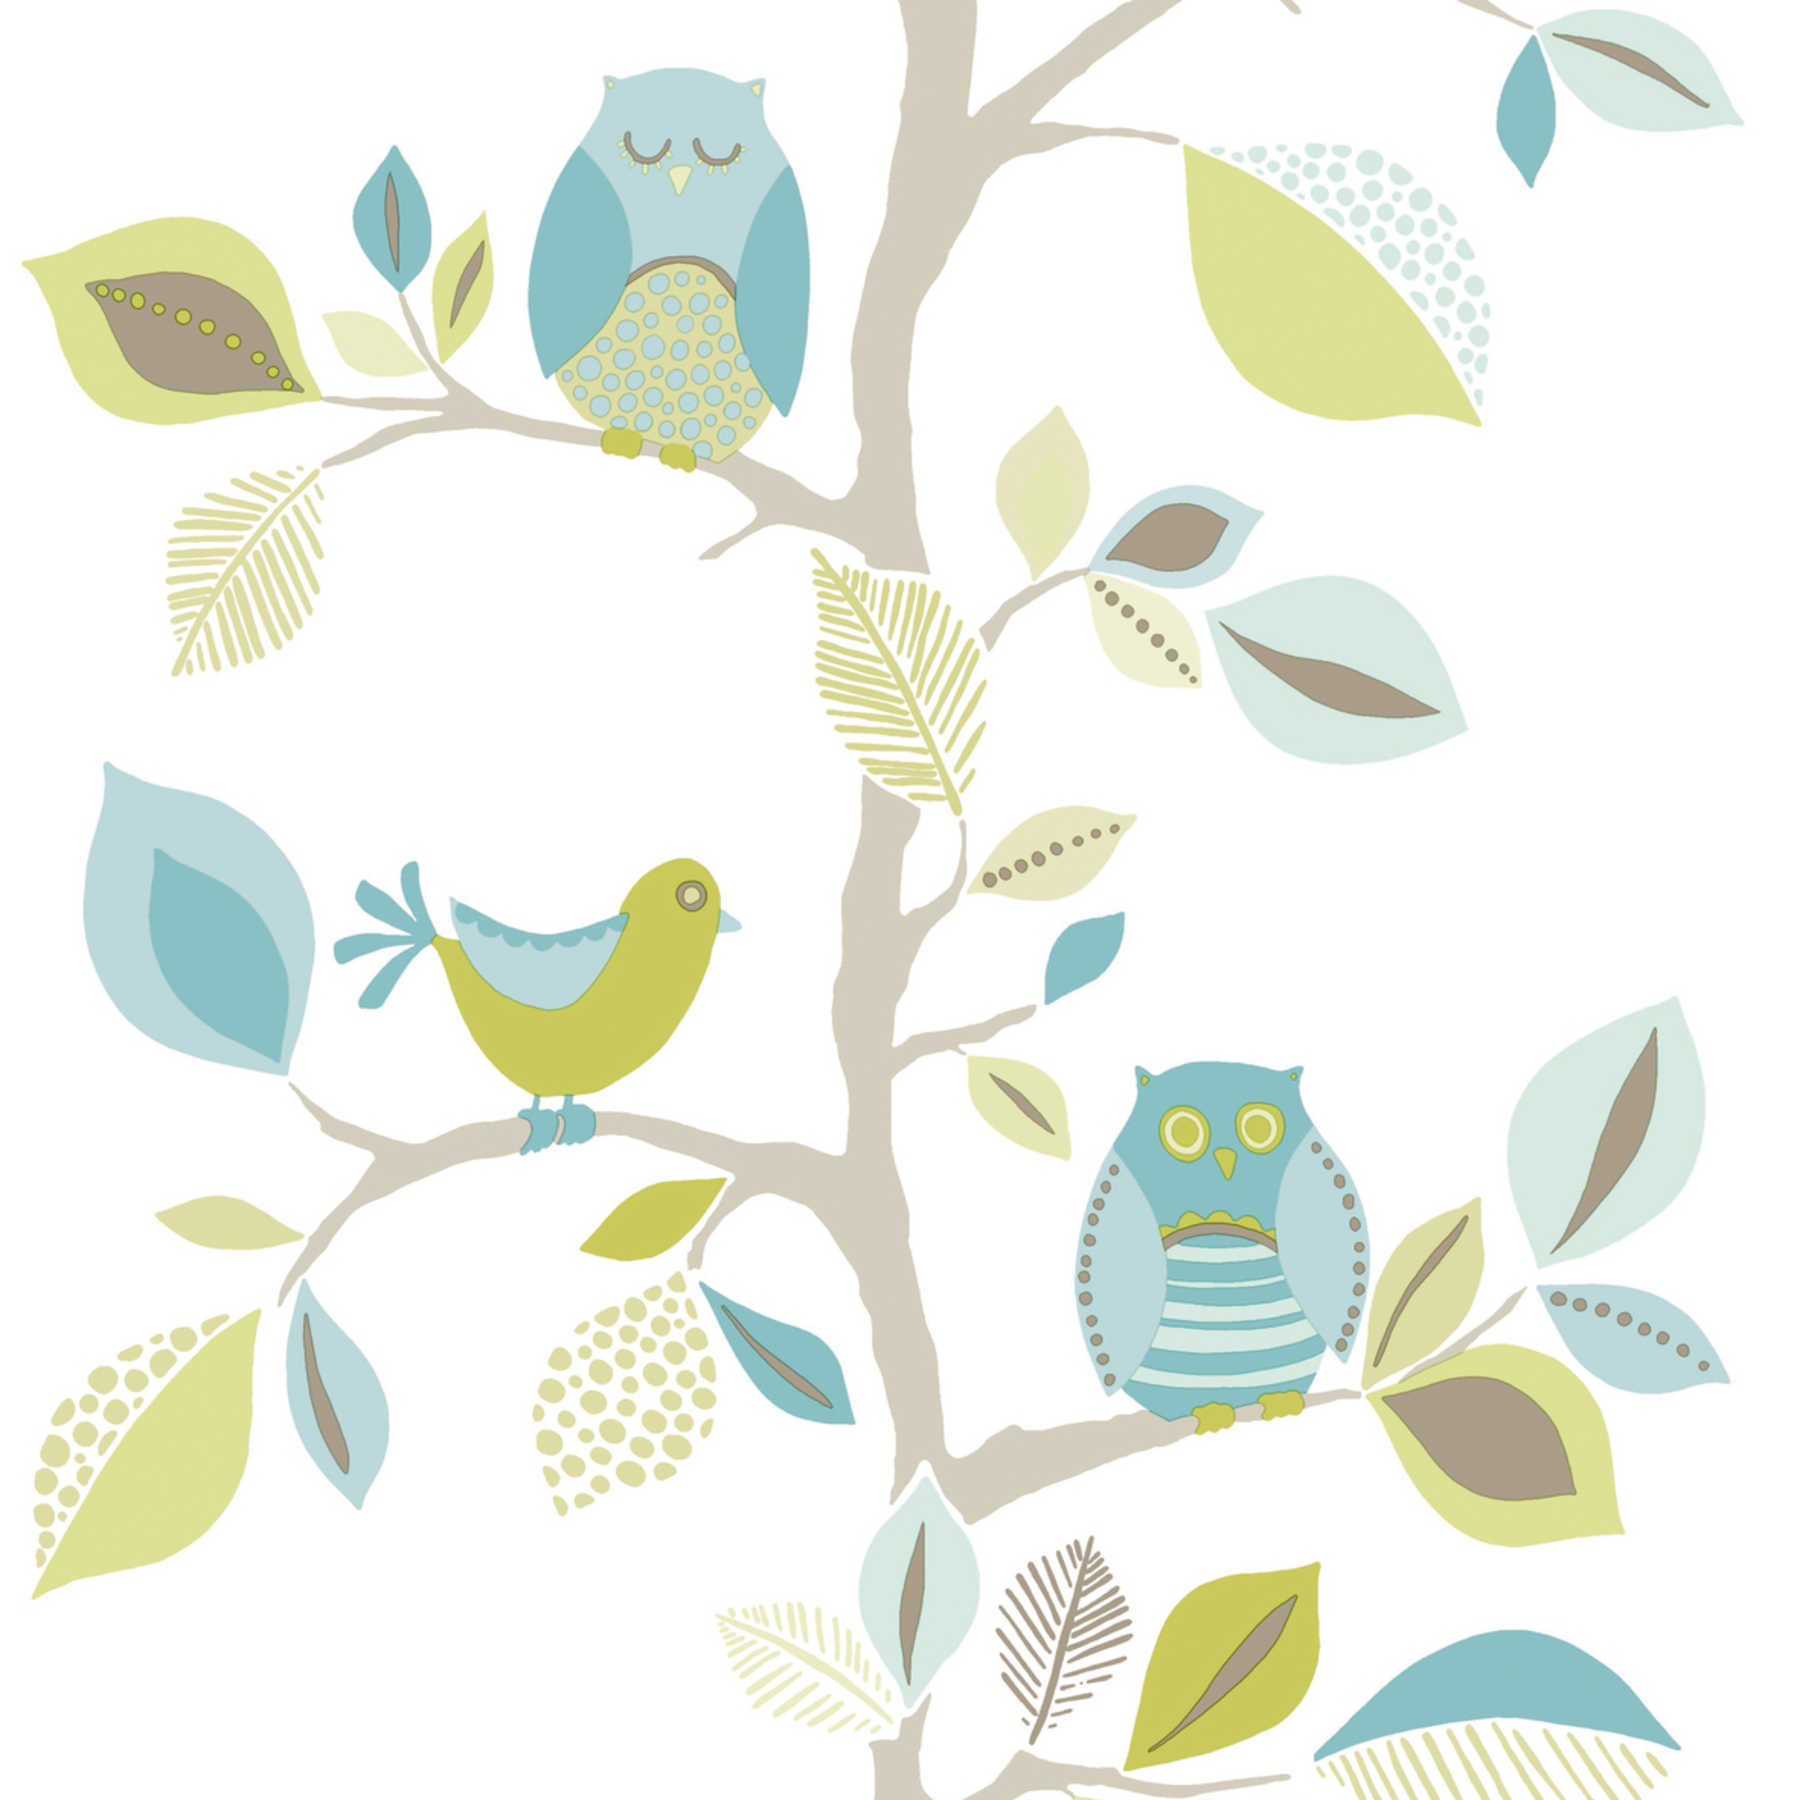             Kinderzimmer Tapete neutral mit Eule & Baum Muster – Blau, Grün
        